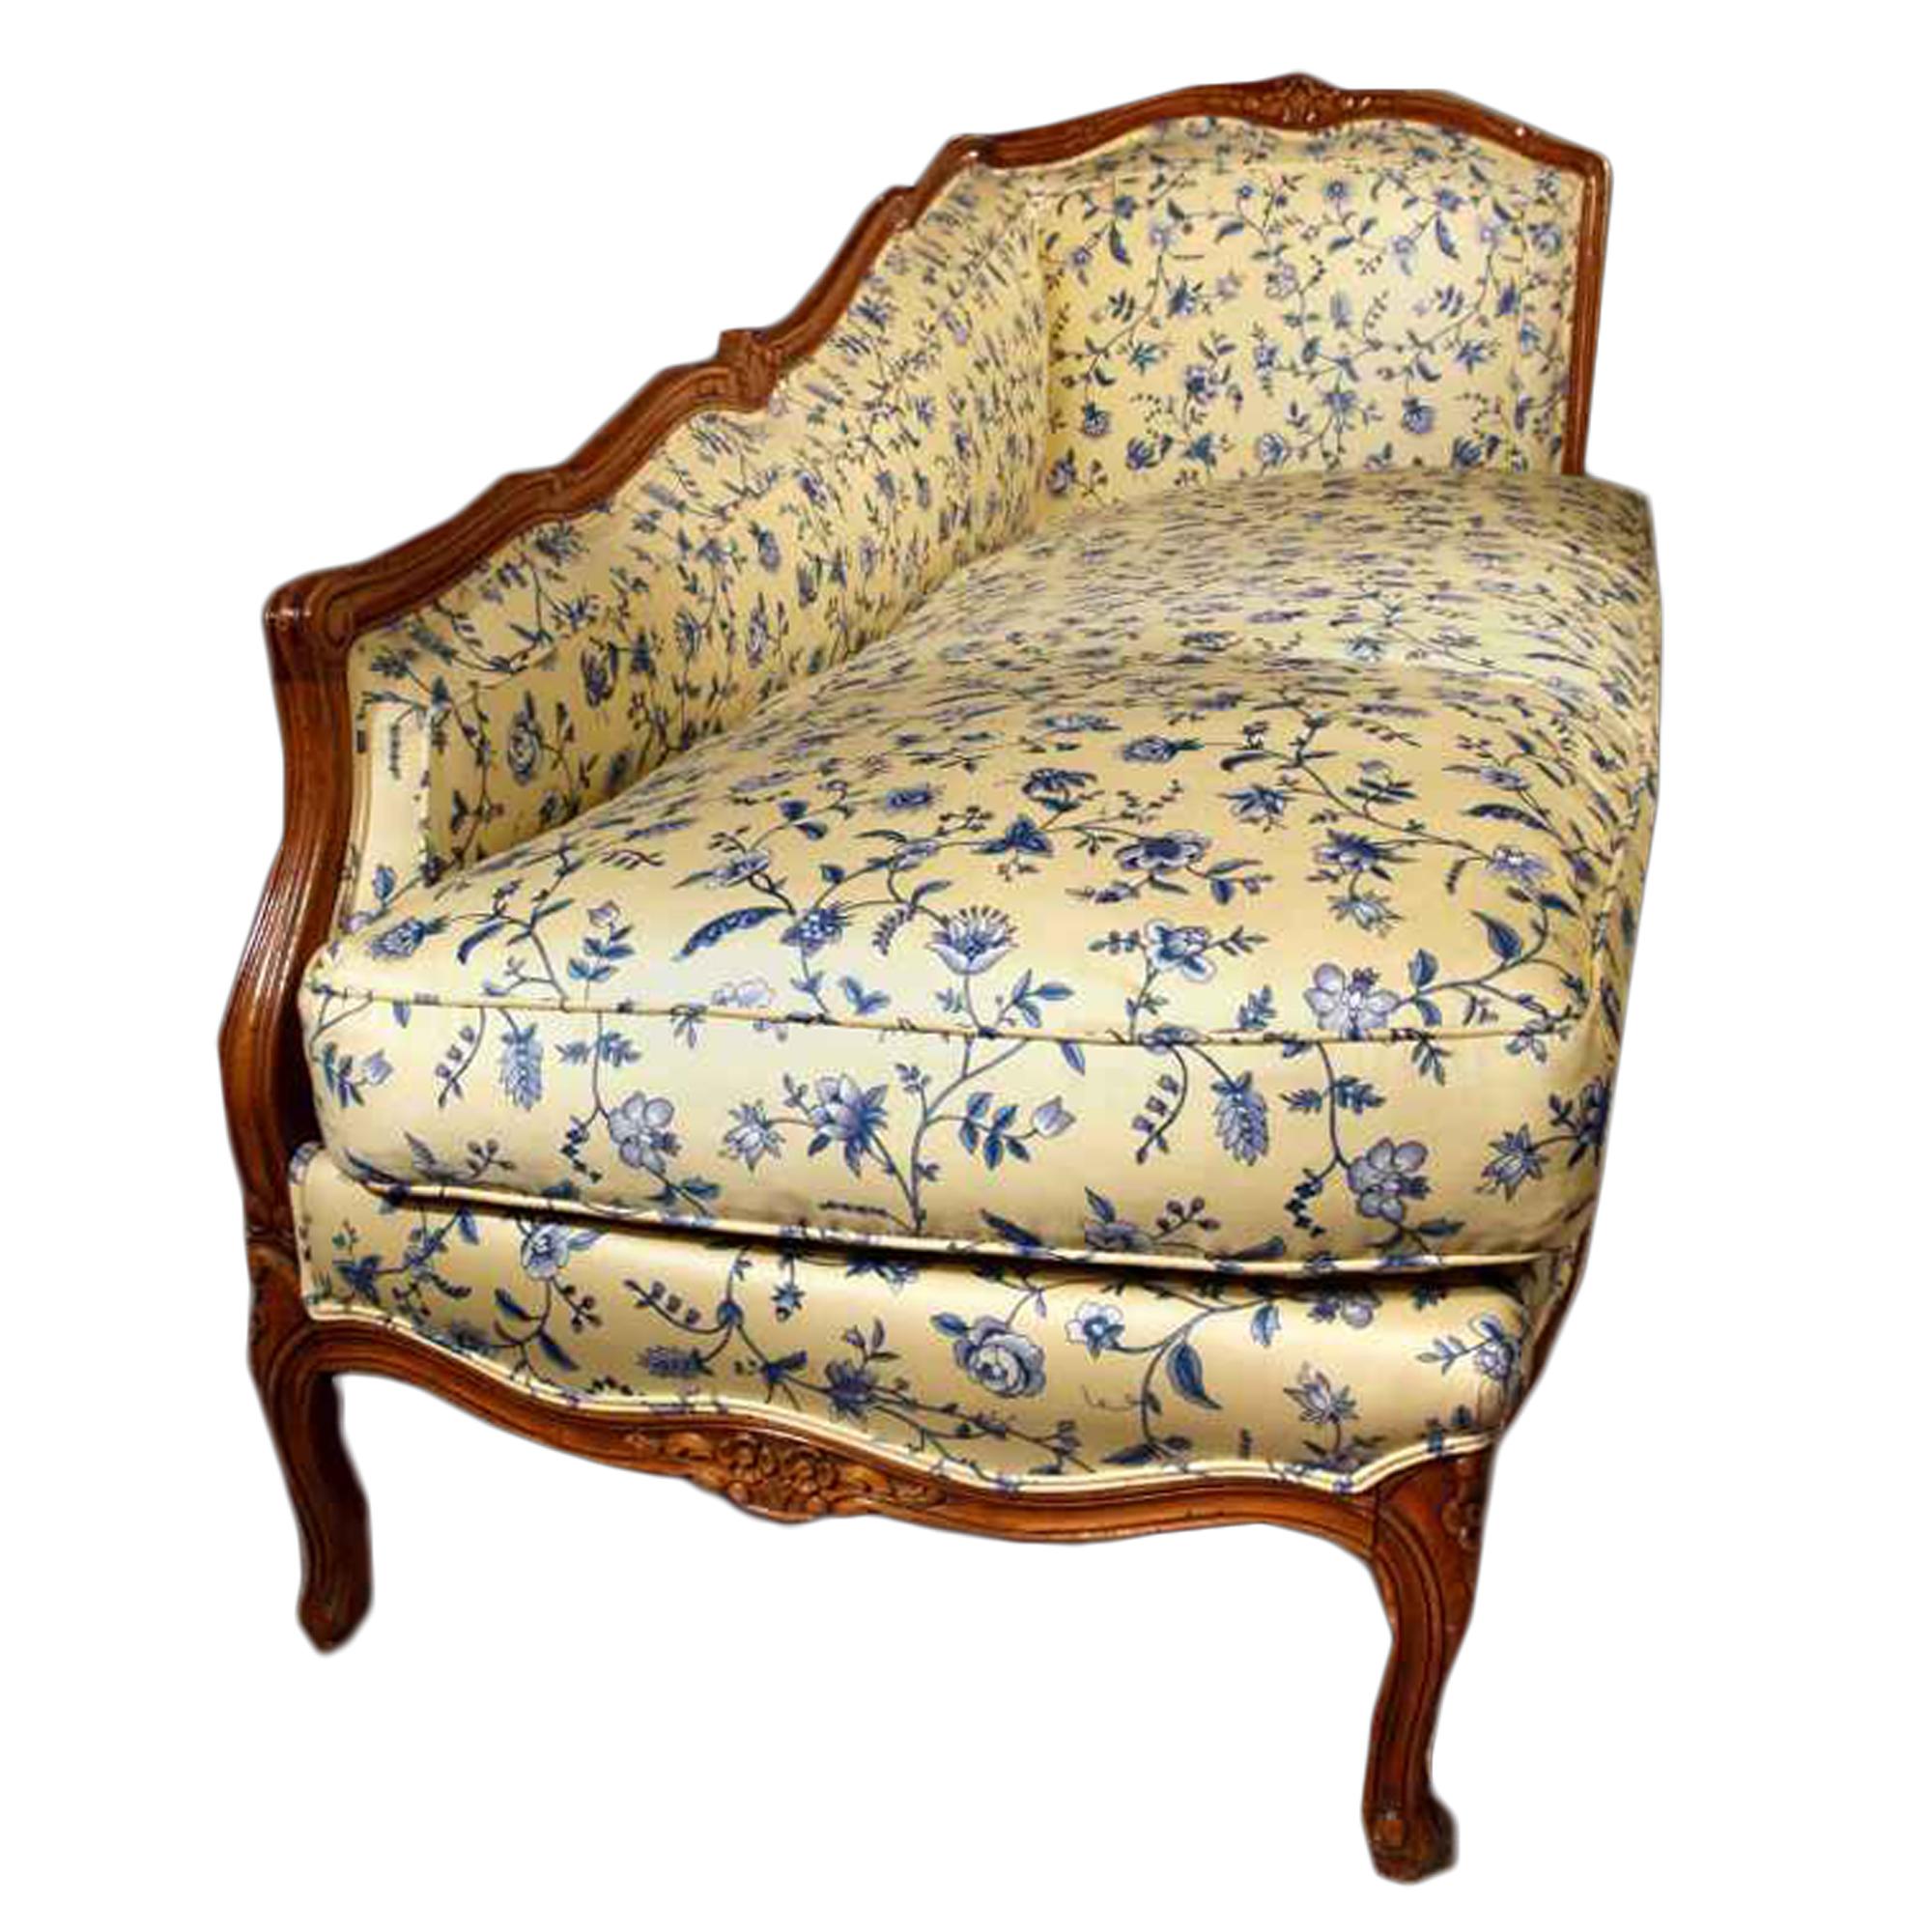 Ein eleganter und ungewöhnlicher französischer Loungesessel aus honigfarbener Eiche im Louis-XVI-Stil des späten 19. Jahrhunderts. Allseitig gepolstert mit einem schönen blau-gelben Stoff. Der Loungesessel steht auf sechs s-förmig geschwungenen